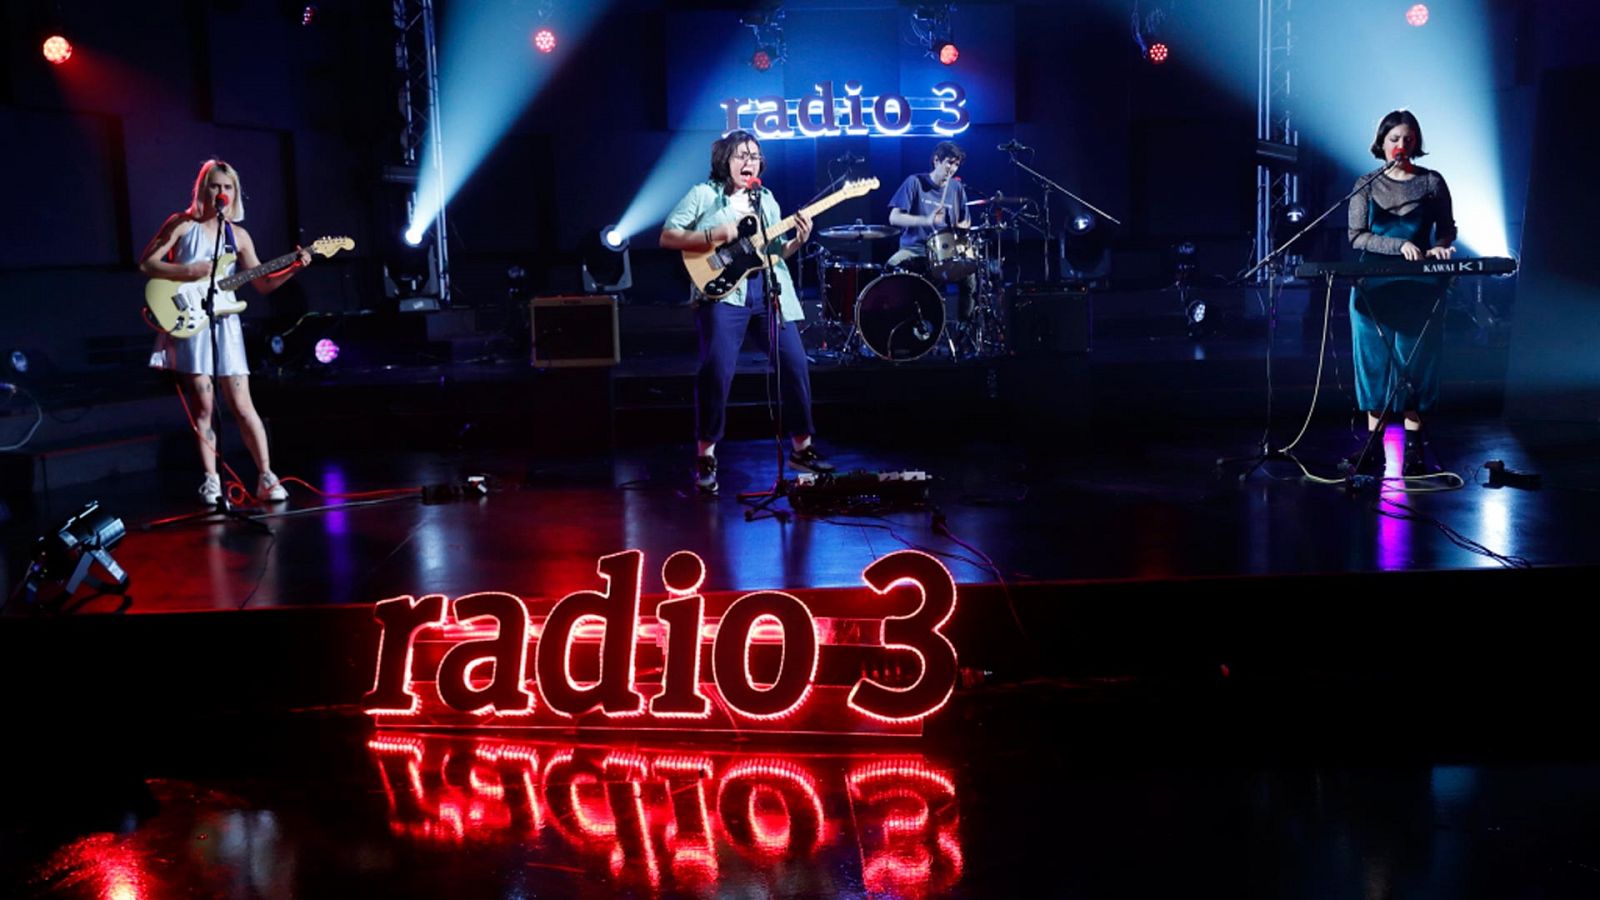 Los conciertos de Radio 3 - Aiko el Grupo en directo